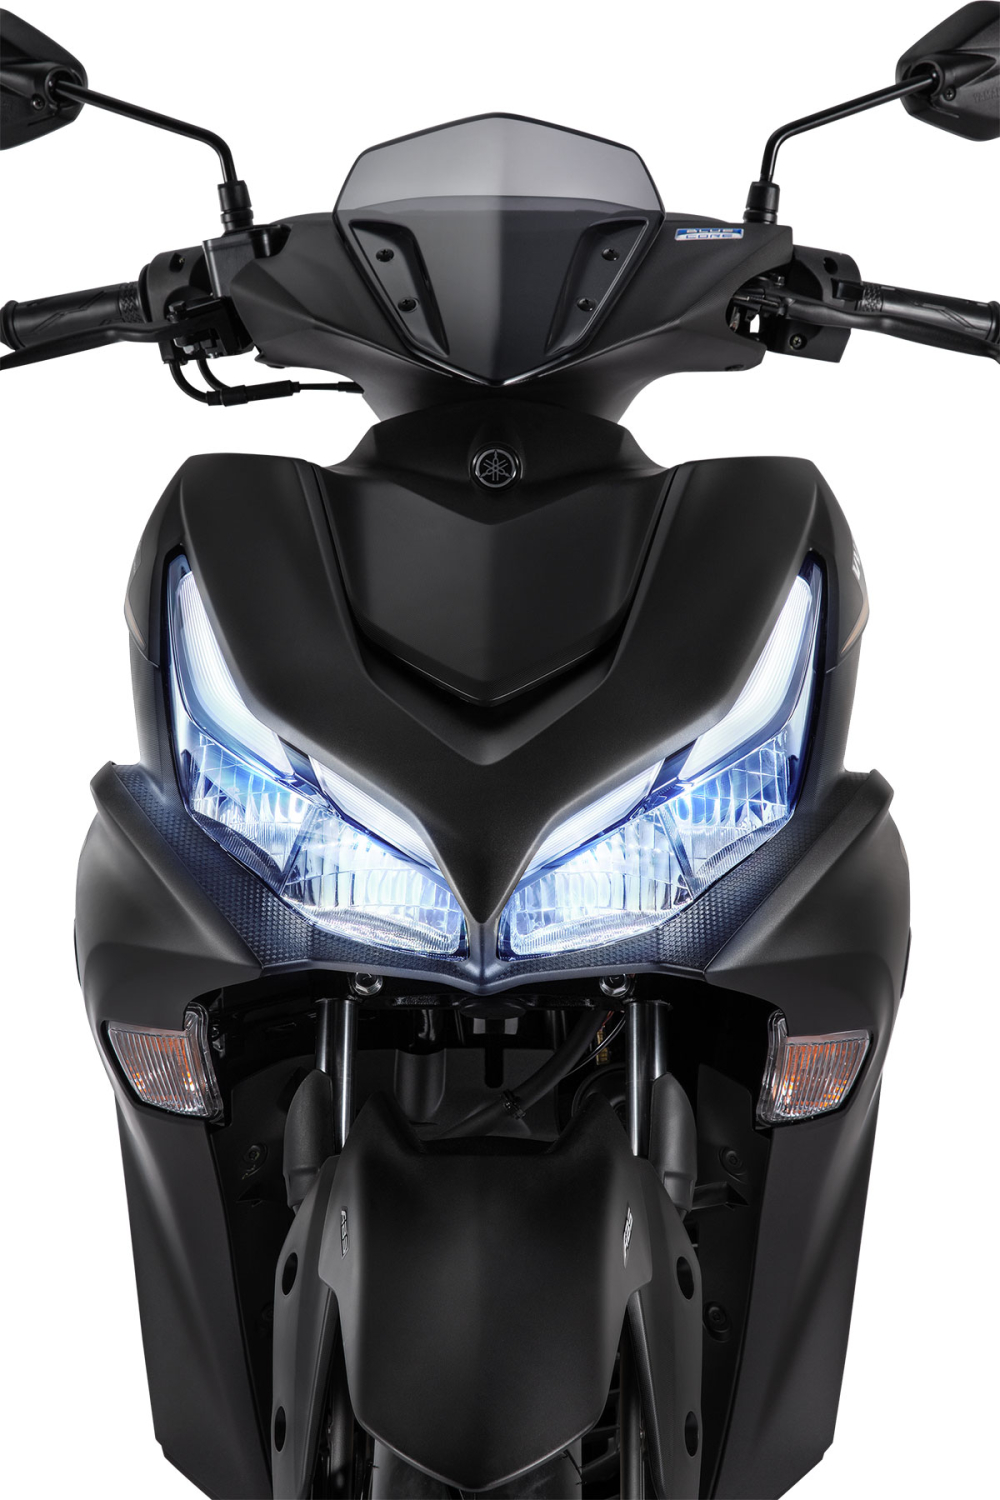 Giá Yamaha NVX 155 2023 và Khuyến Mãi Mới Nhất - Tinxe